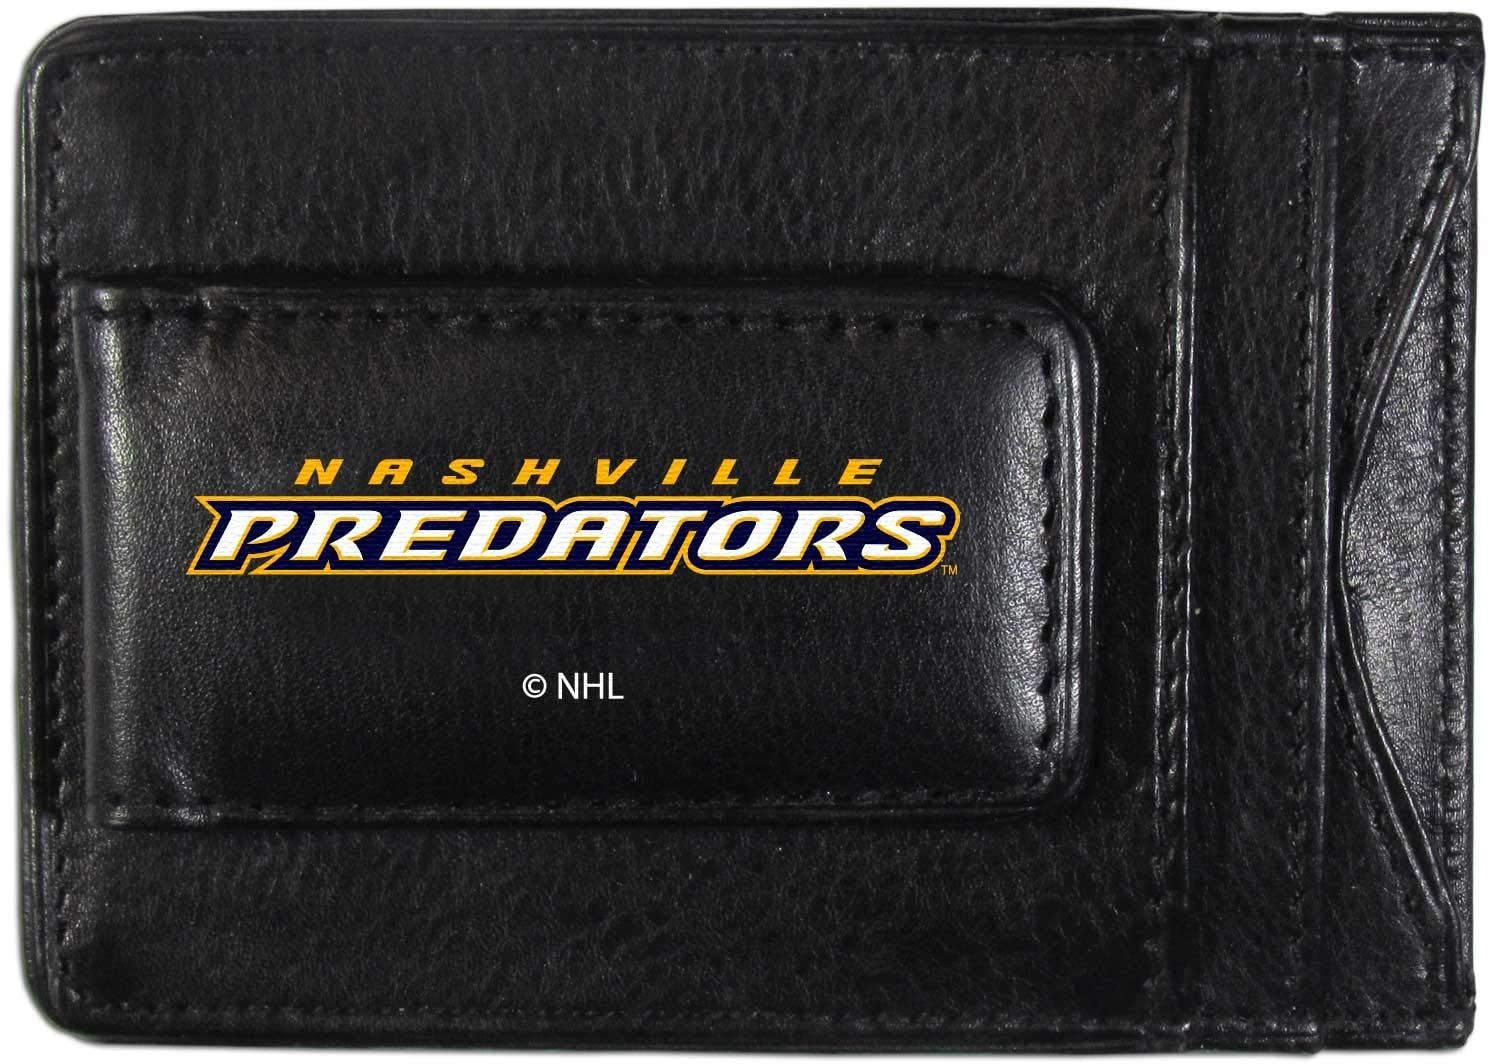 Nashville Predators Black Leather Wallet, Front Pocket Magnetic Money Clip, Printed Logo